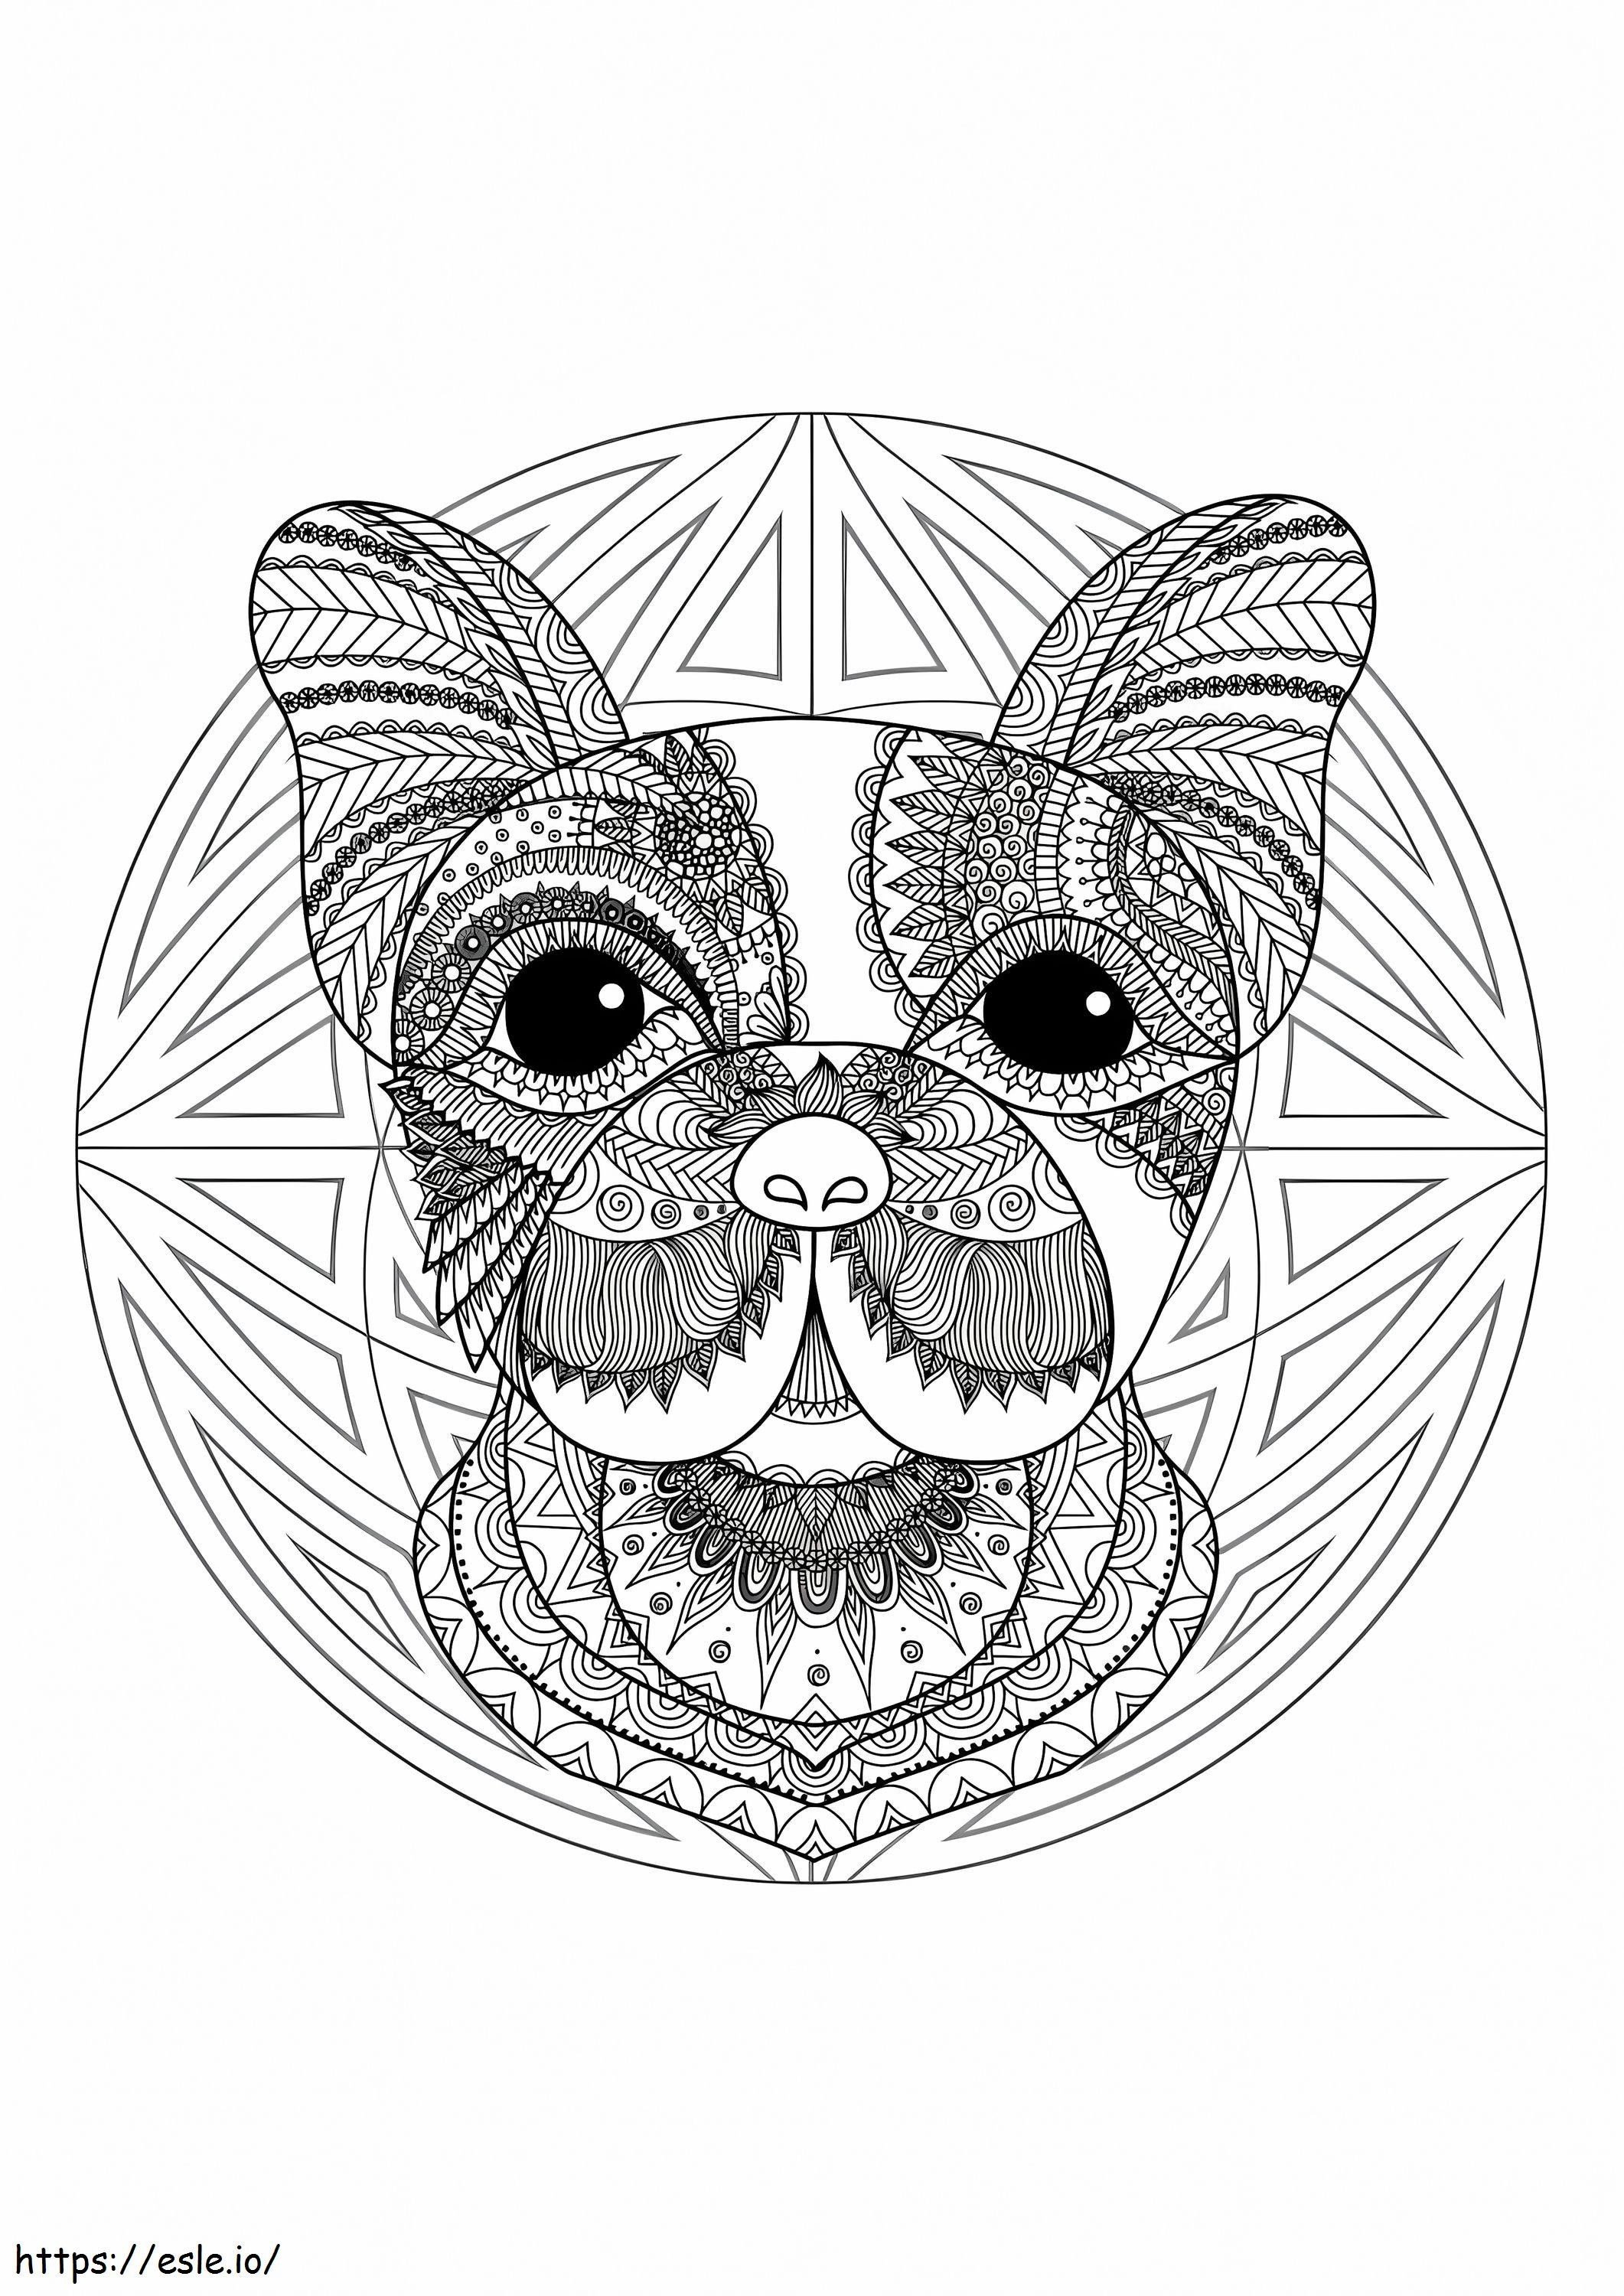 Coloriage Mandala Animal Bouledogue Français à imprimer dessin